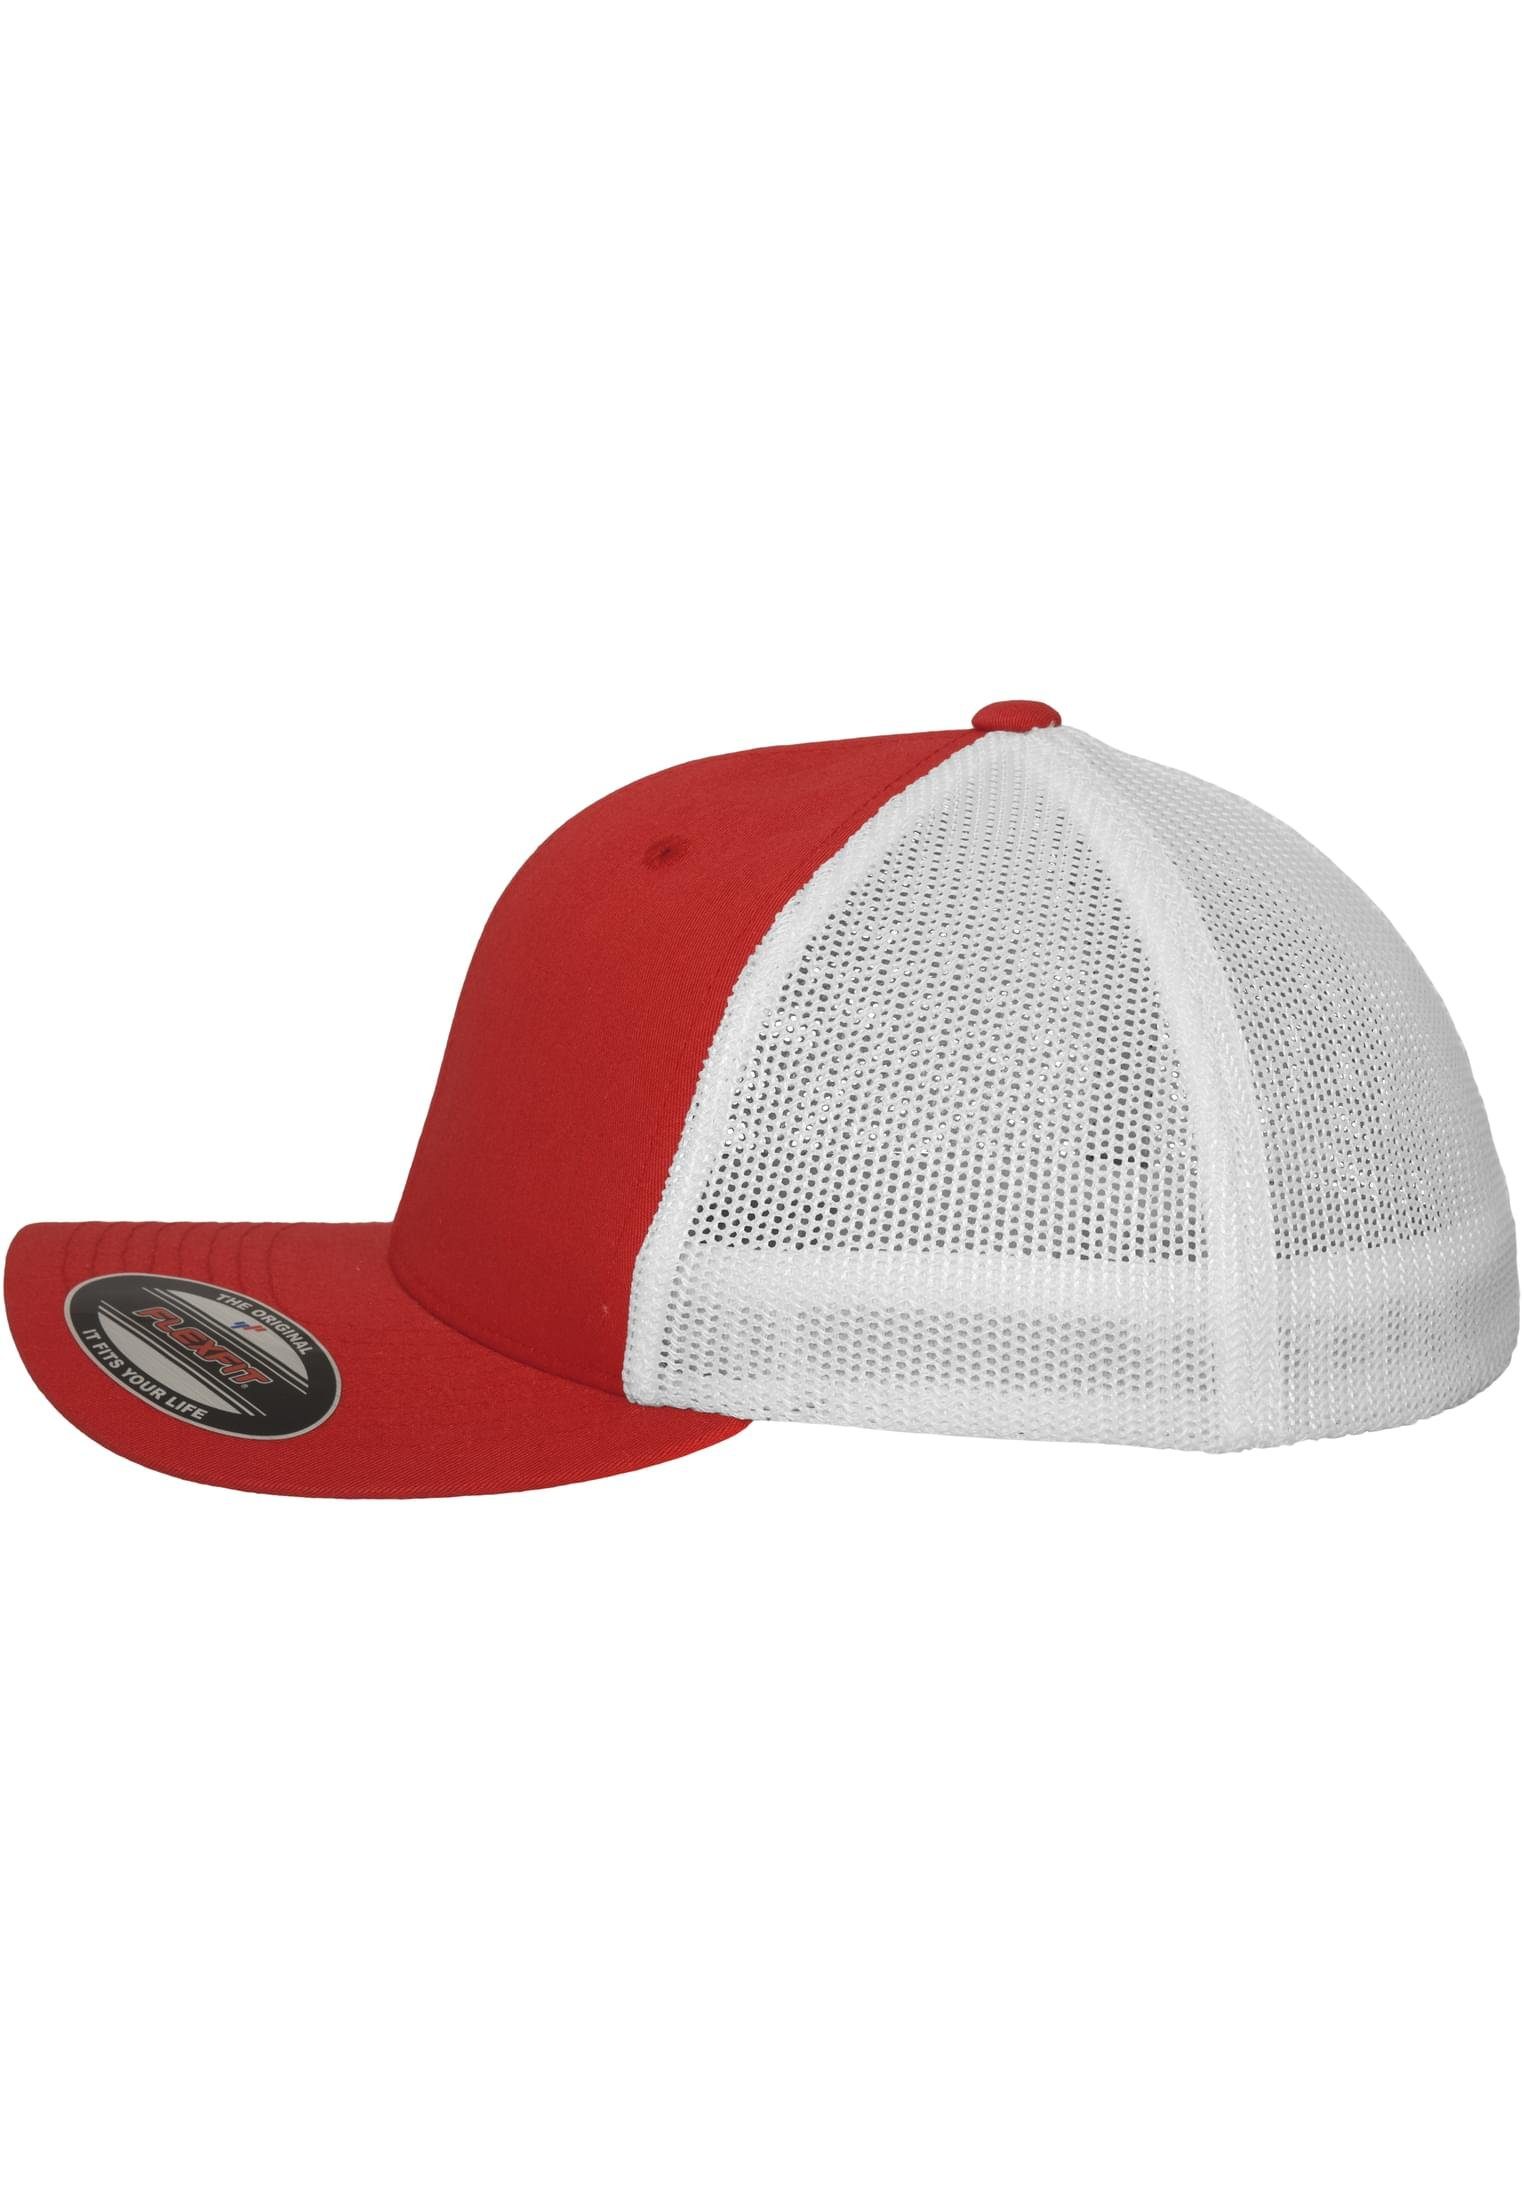 Flexfit Flex Cap Trucker Accessoires red/white Flexfit Mesh 2-Tone